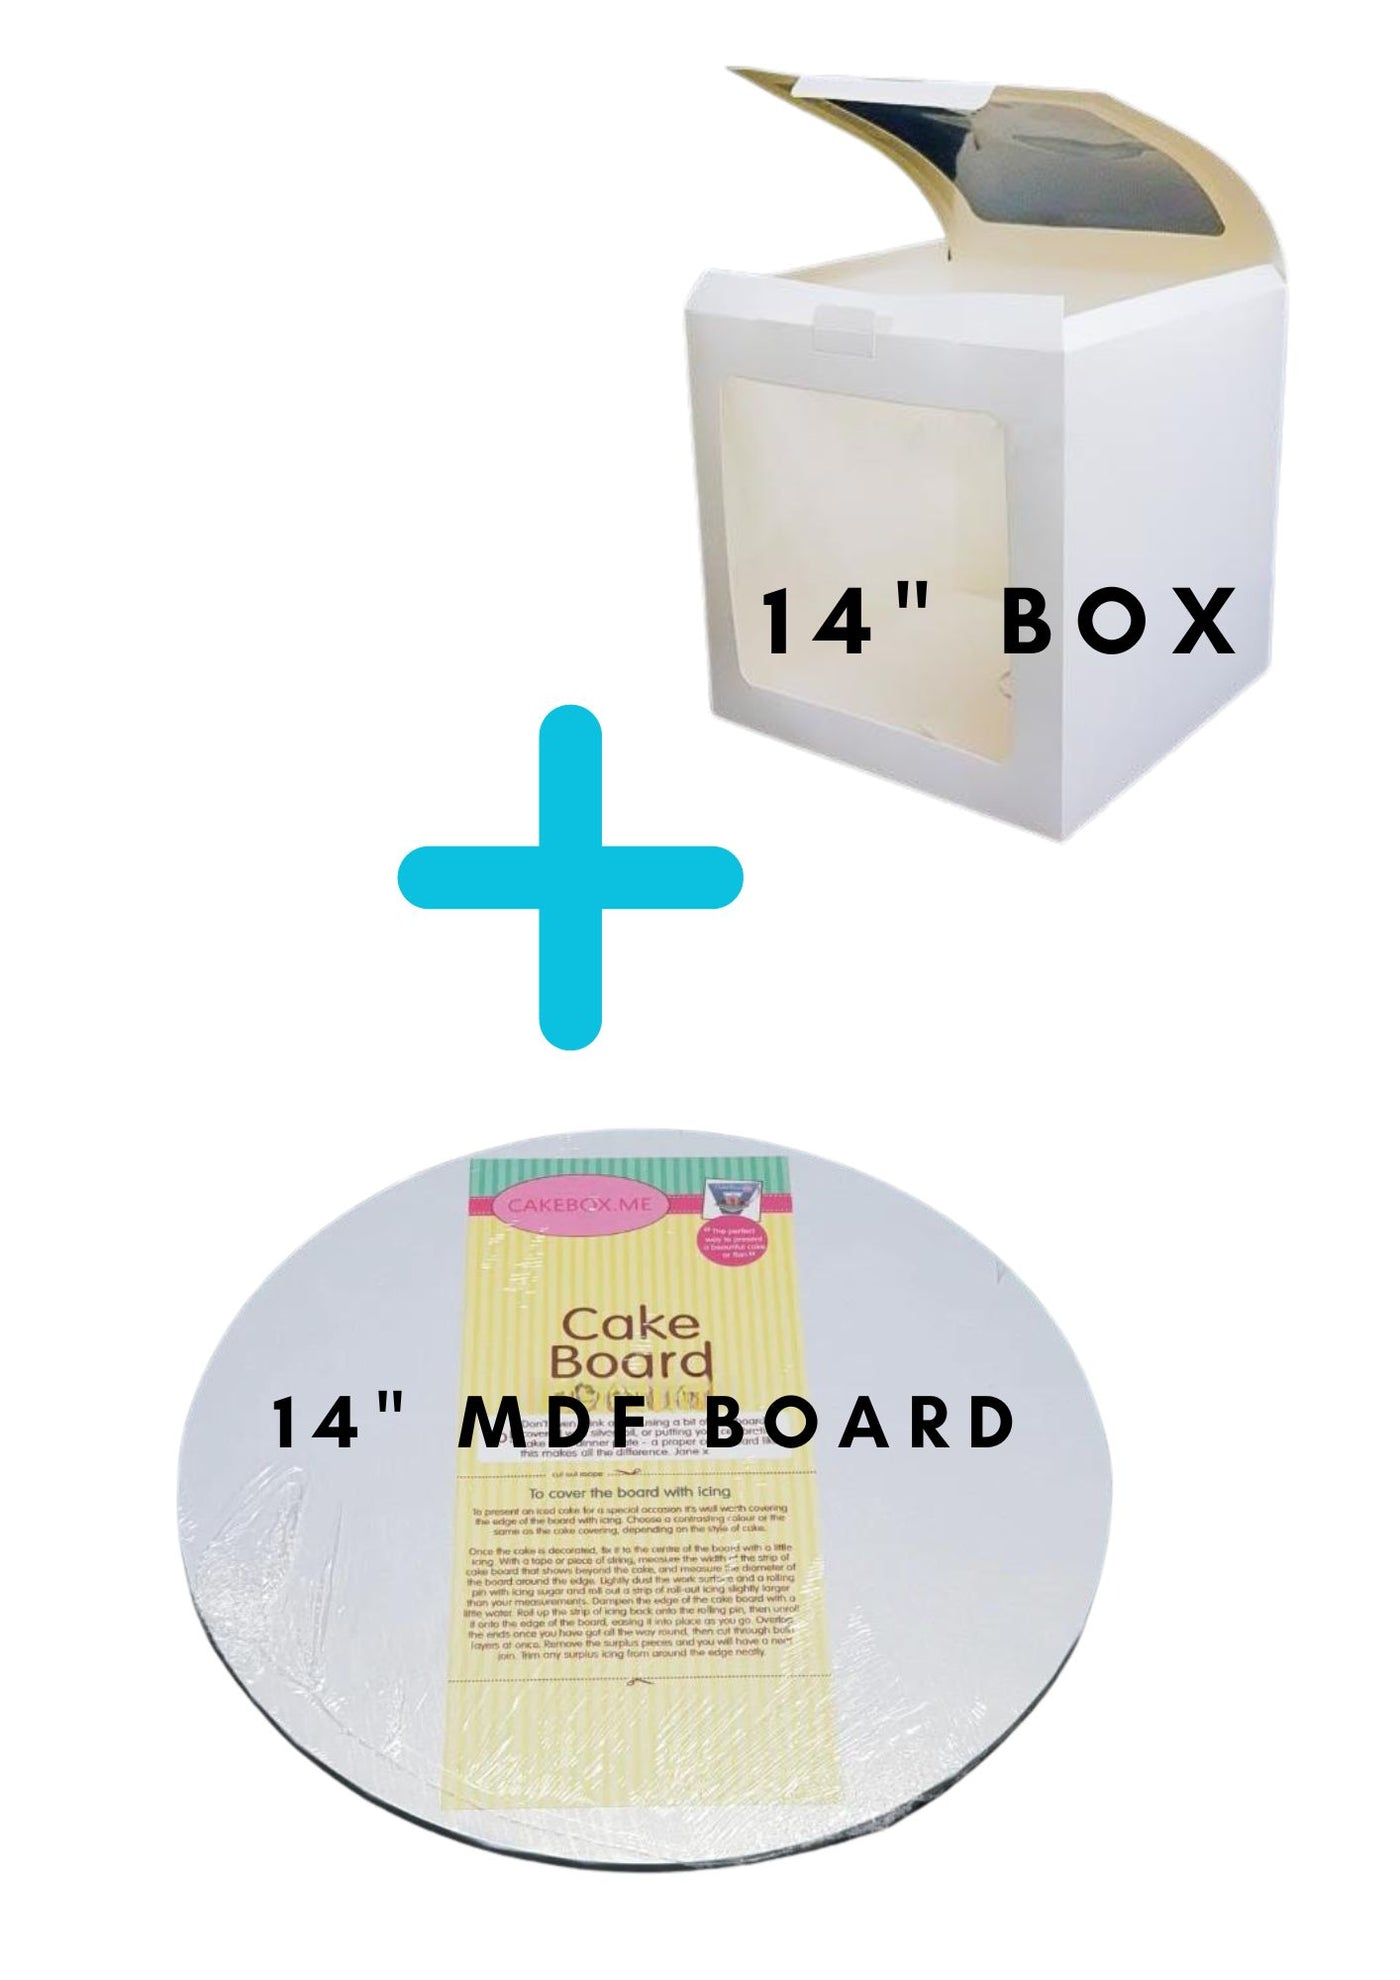 Premier 14"  Box + MDF 14" Board combo